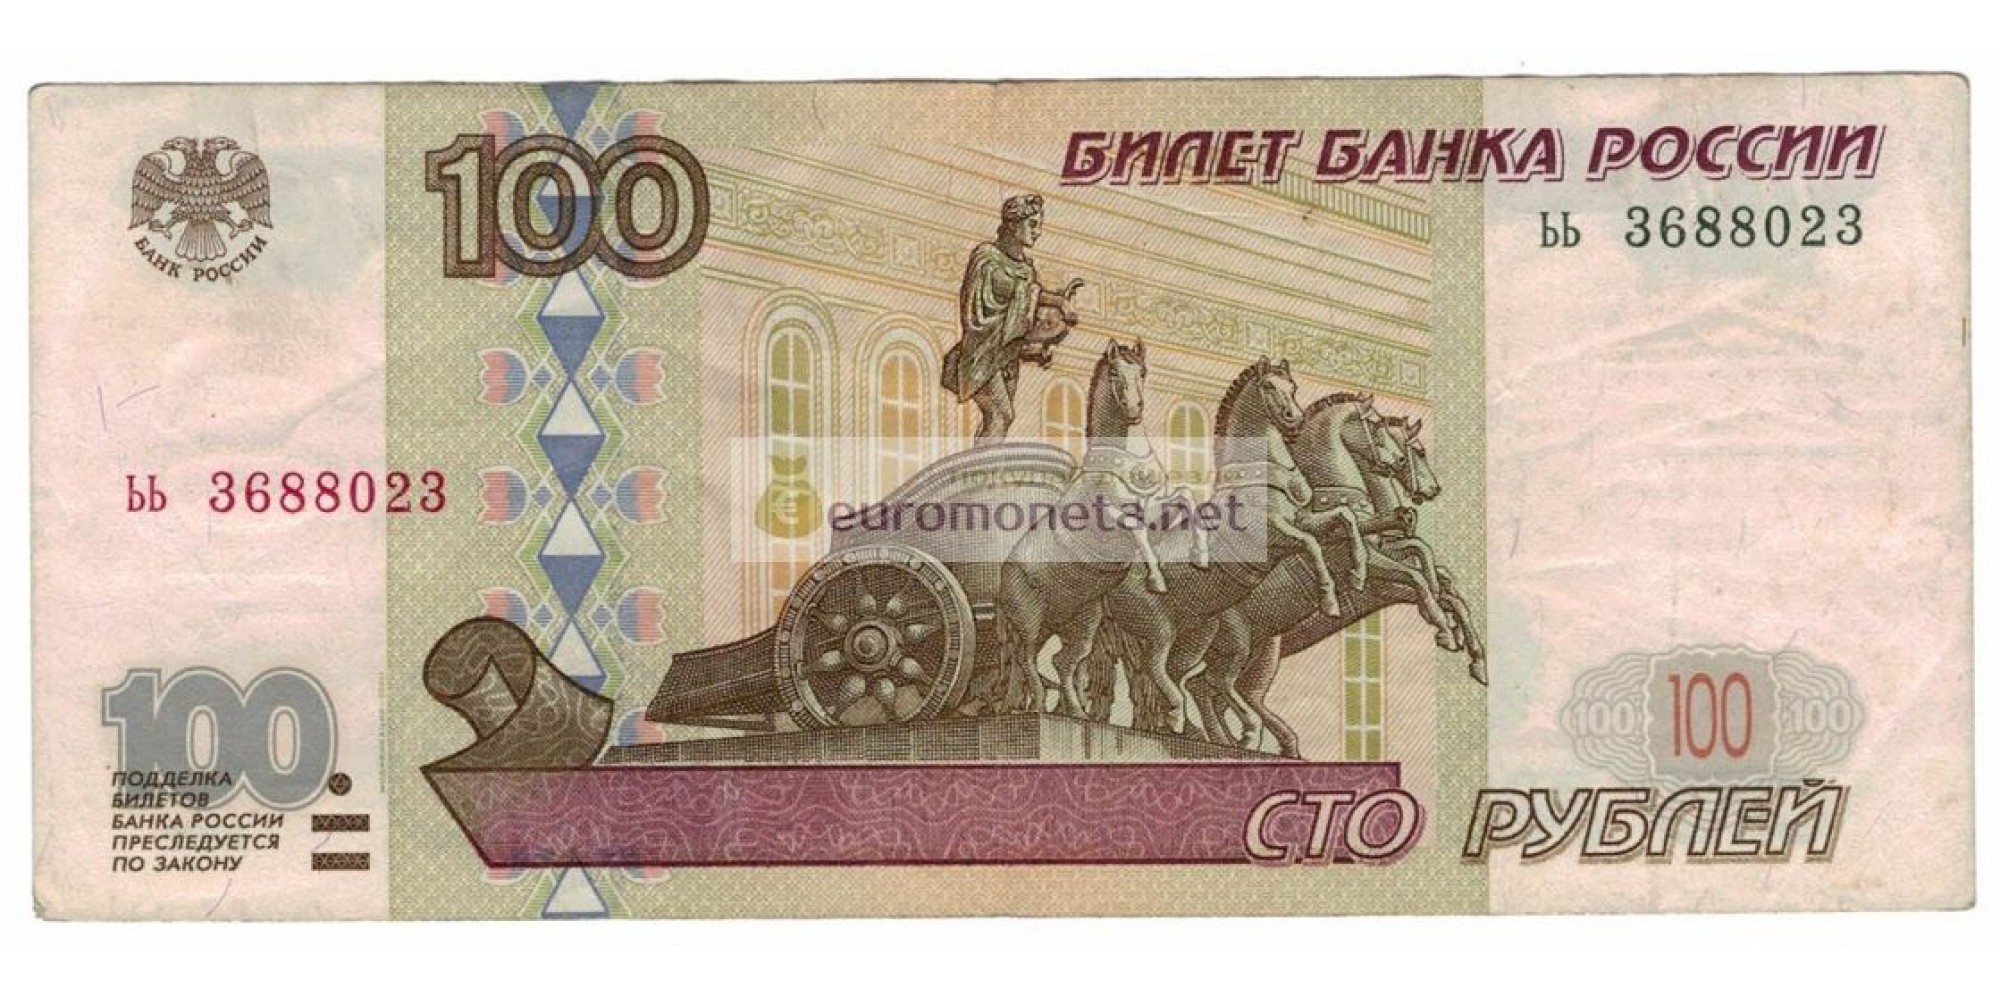 Россия 100 рублей 1997 год модификация 2001 год серия ьь 3688023